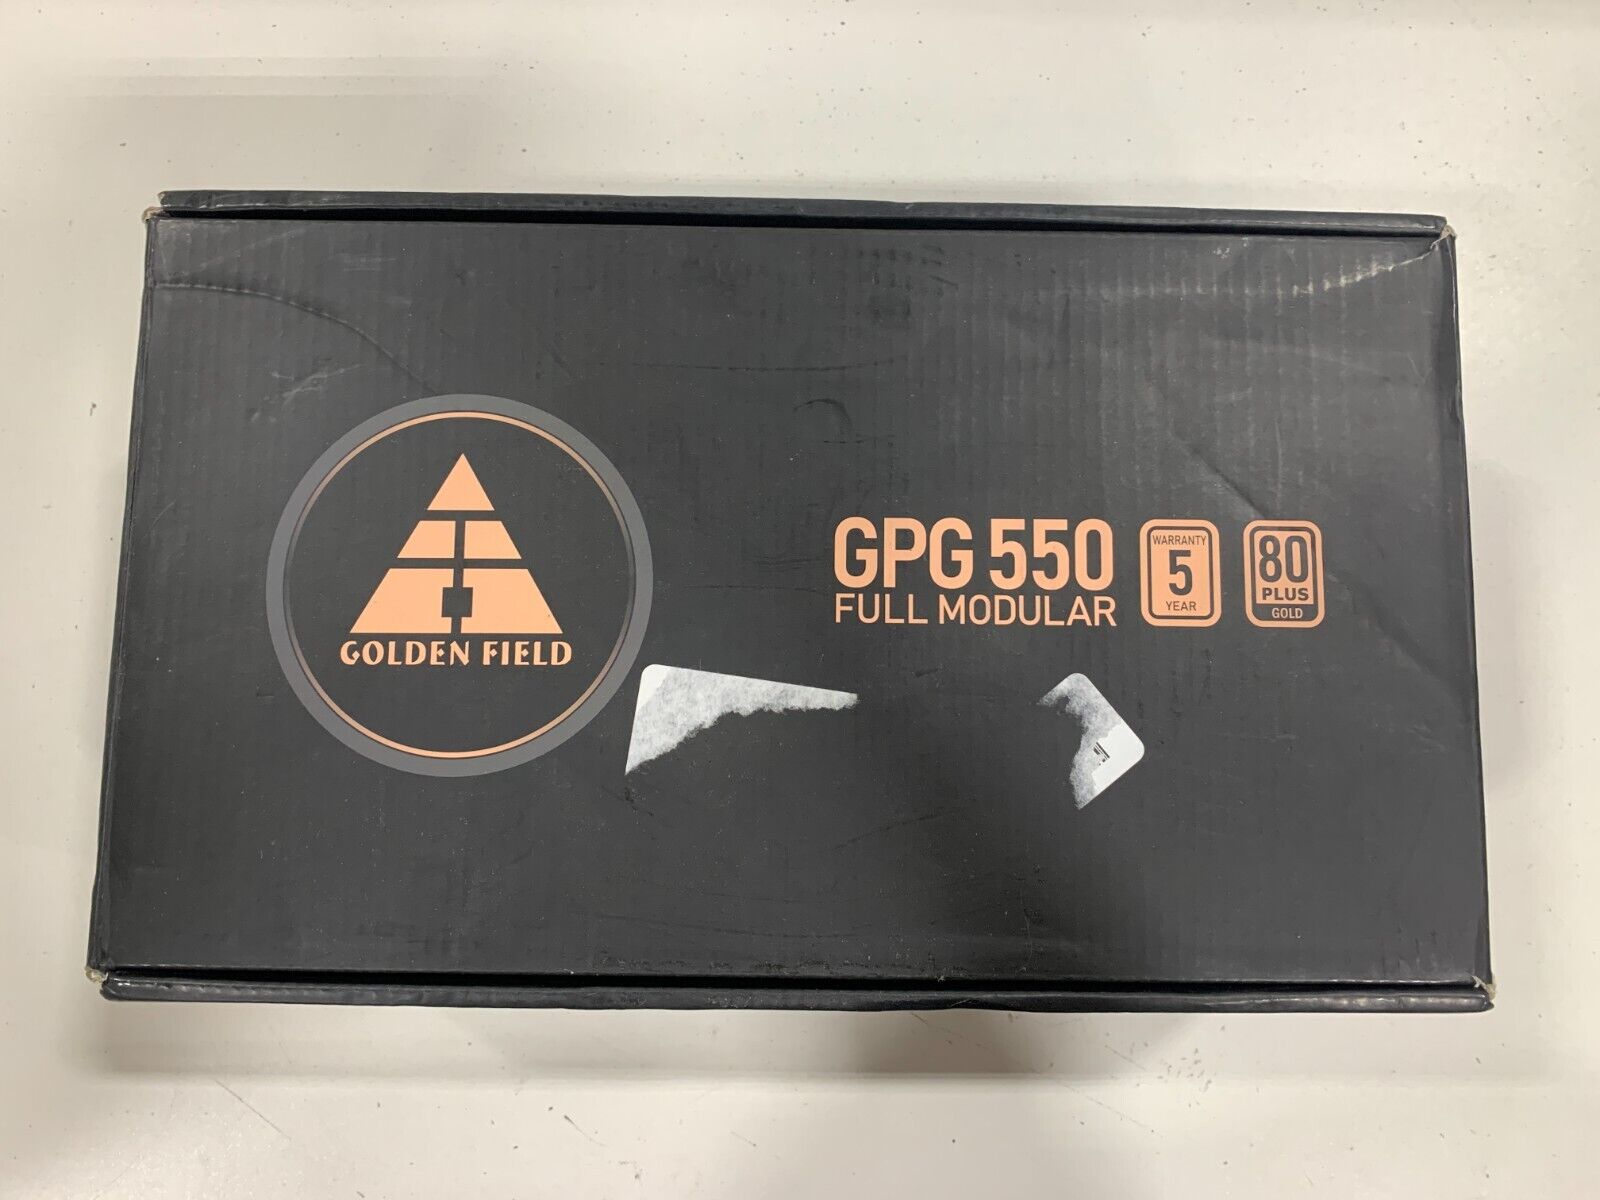 Golden Field GPG 550 Full Modular 80 Plus Gold